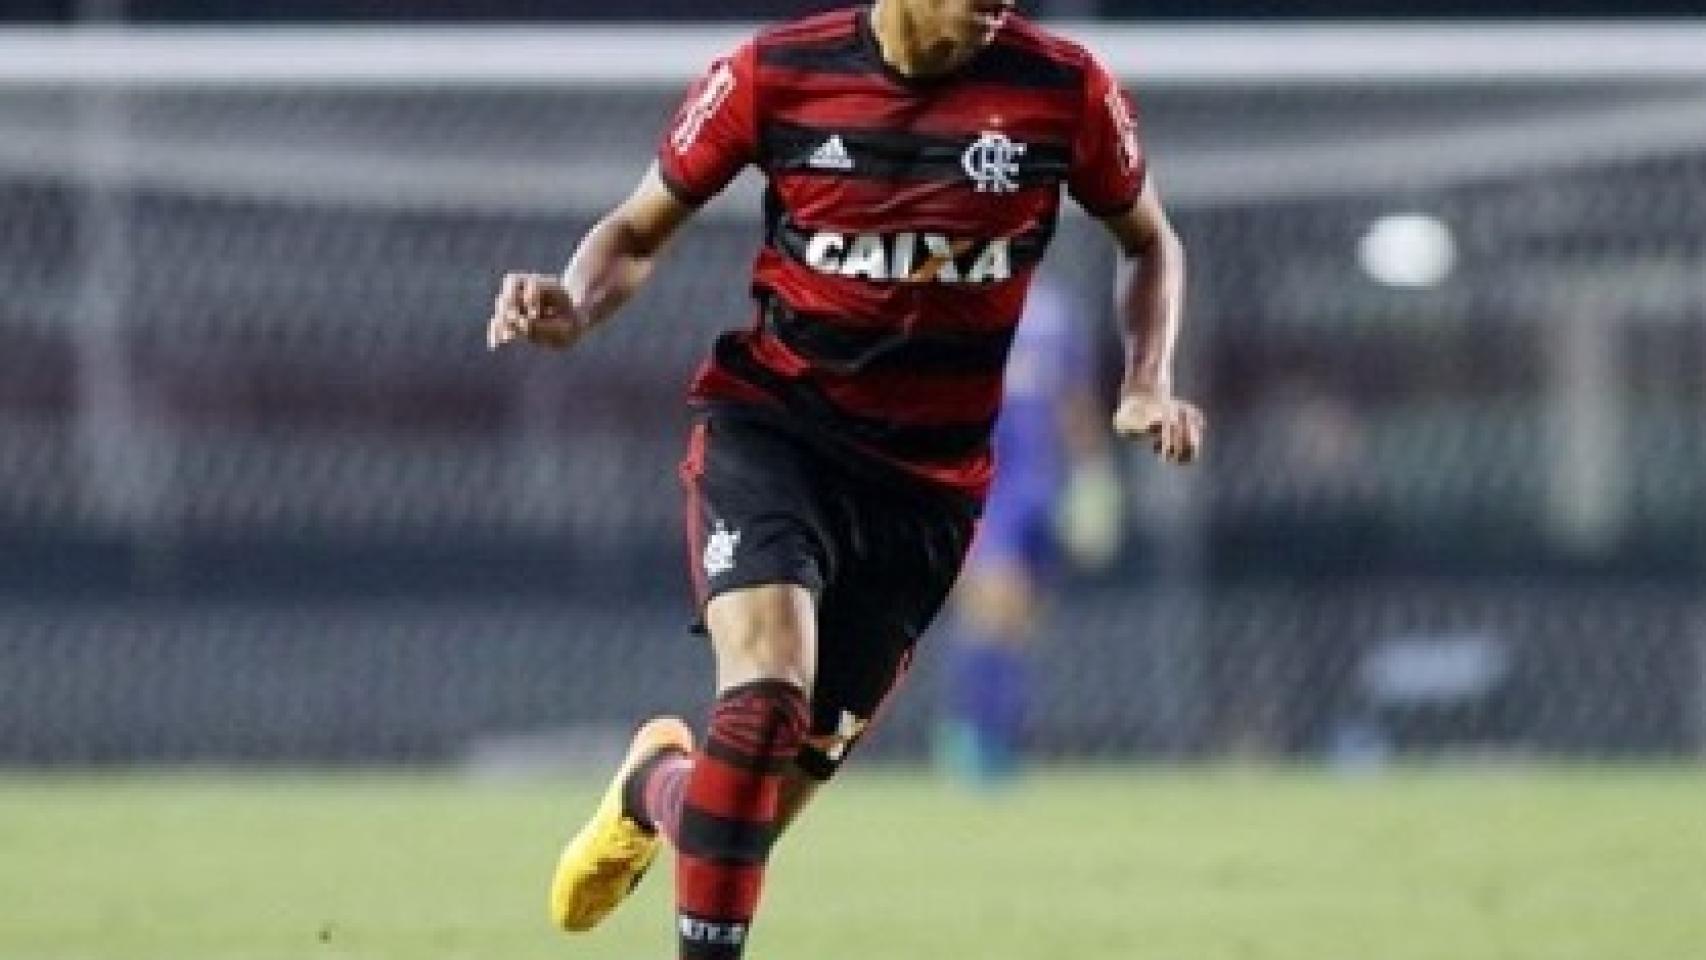 Irmã de Reinier revela que o médio do Real Madrid quer voltar ao Flamengo -  Brasil - Jornal Record